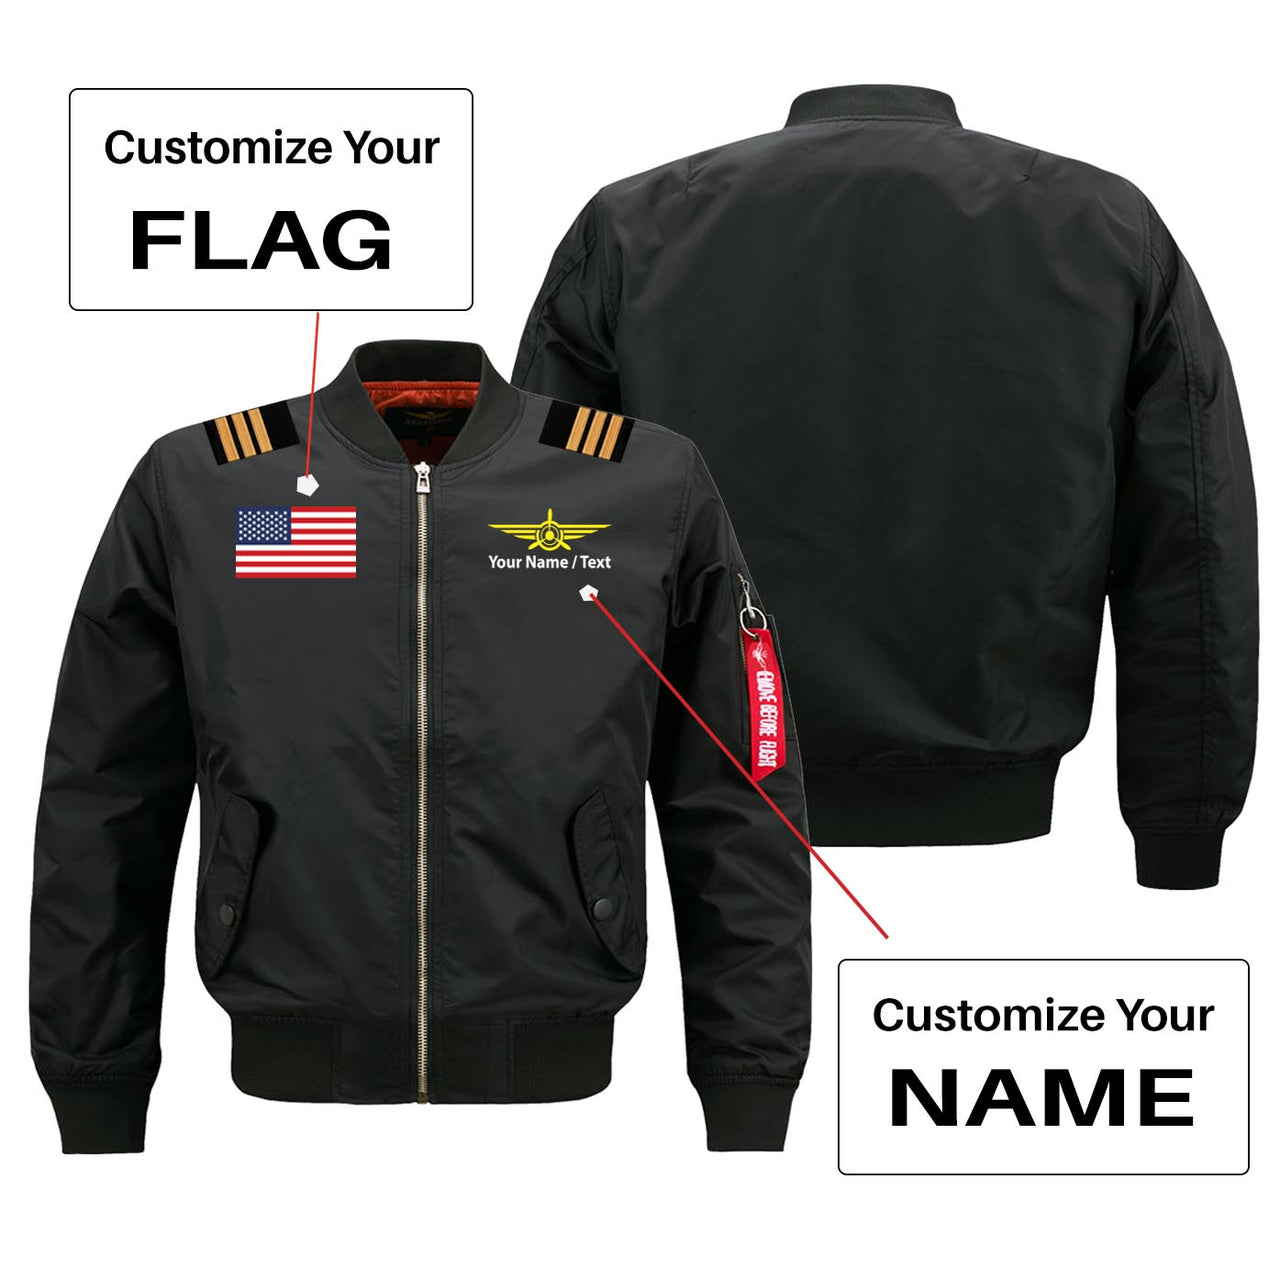 Custom Flag & Name with EPAULETTES (Badge 3) Designed Pilot Jackets